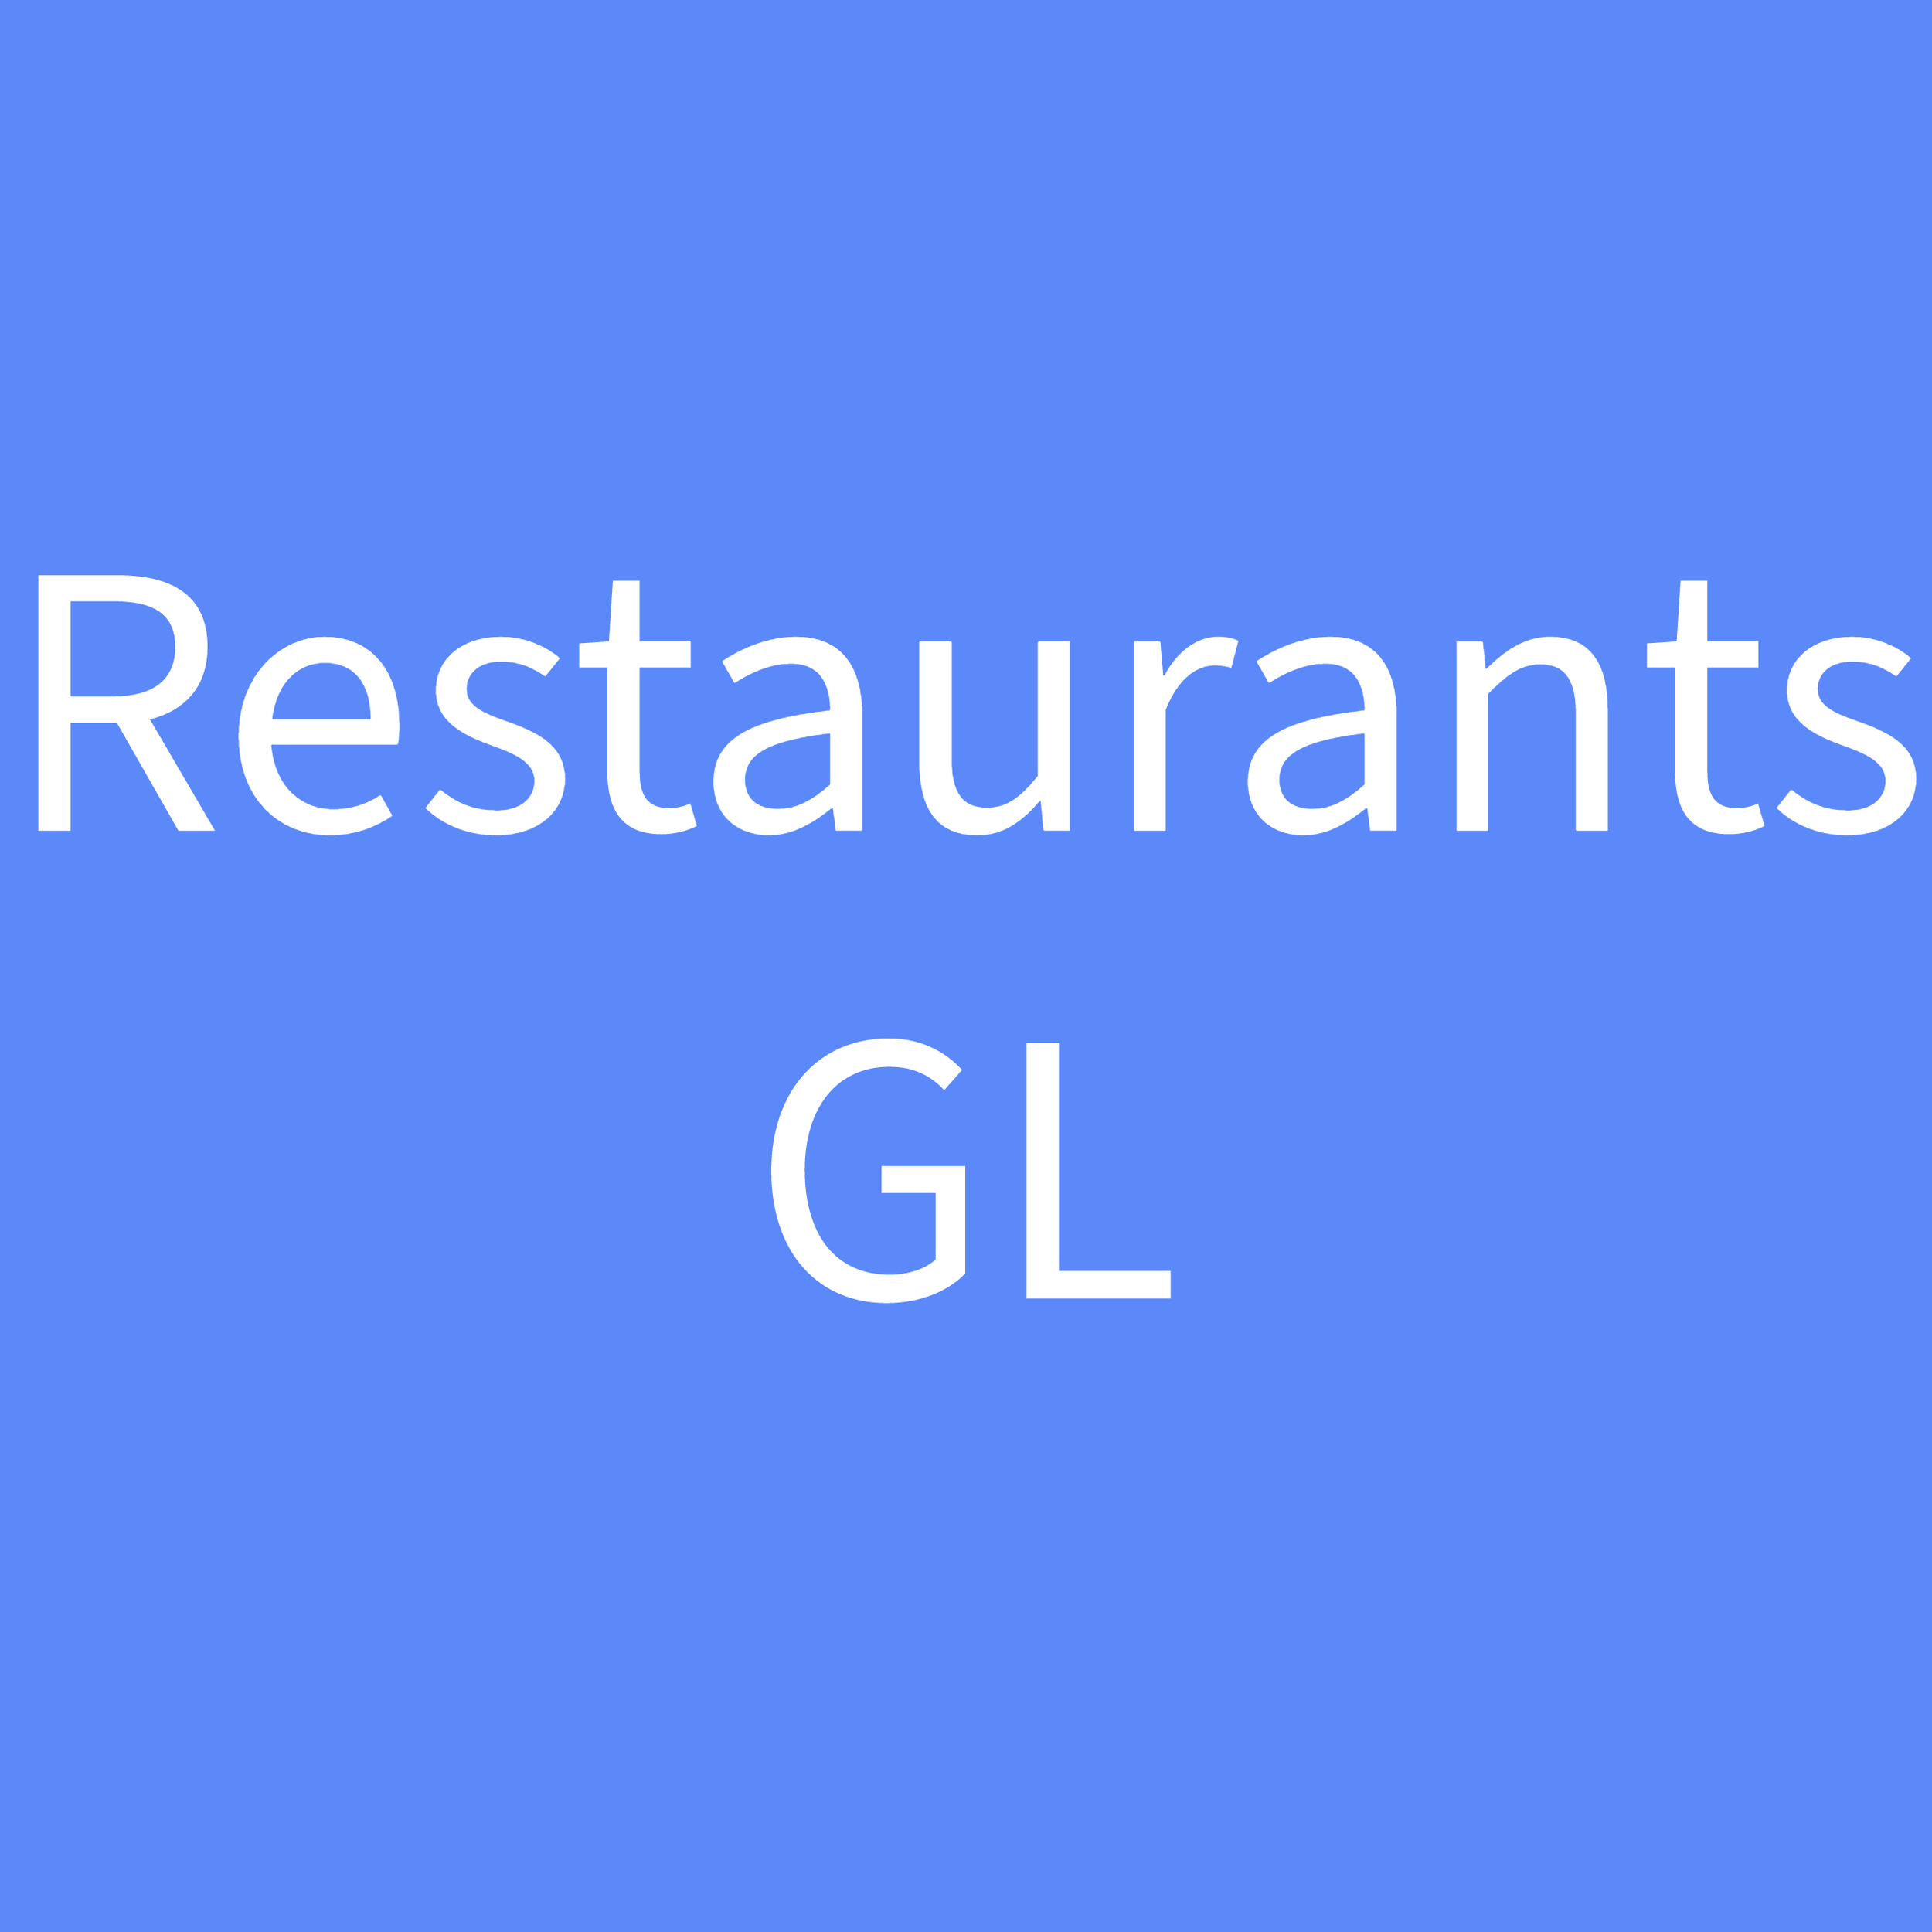 Restaurants GL